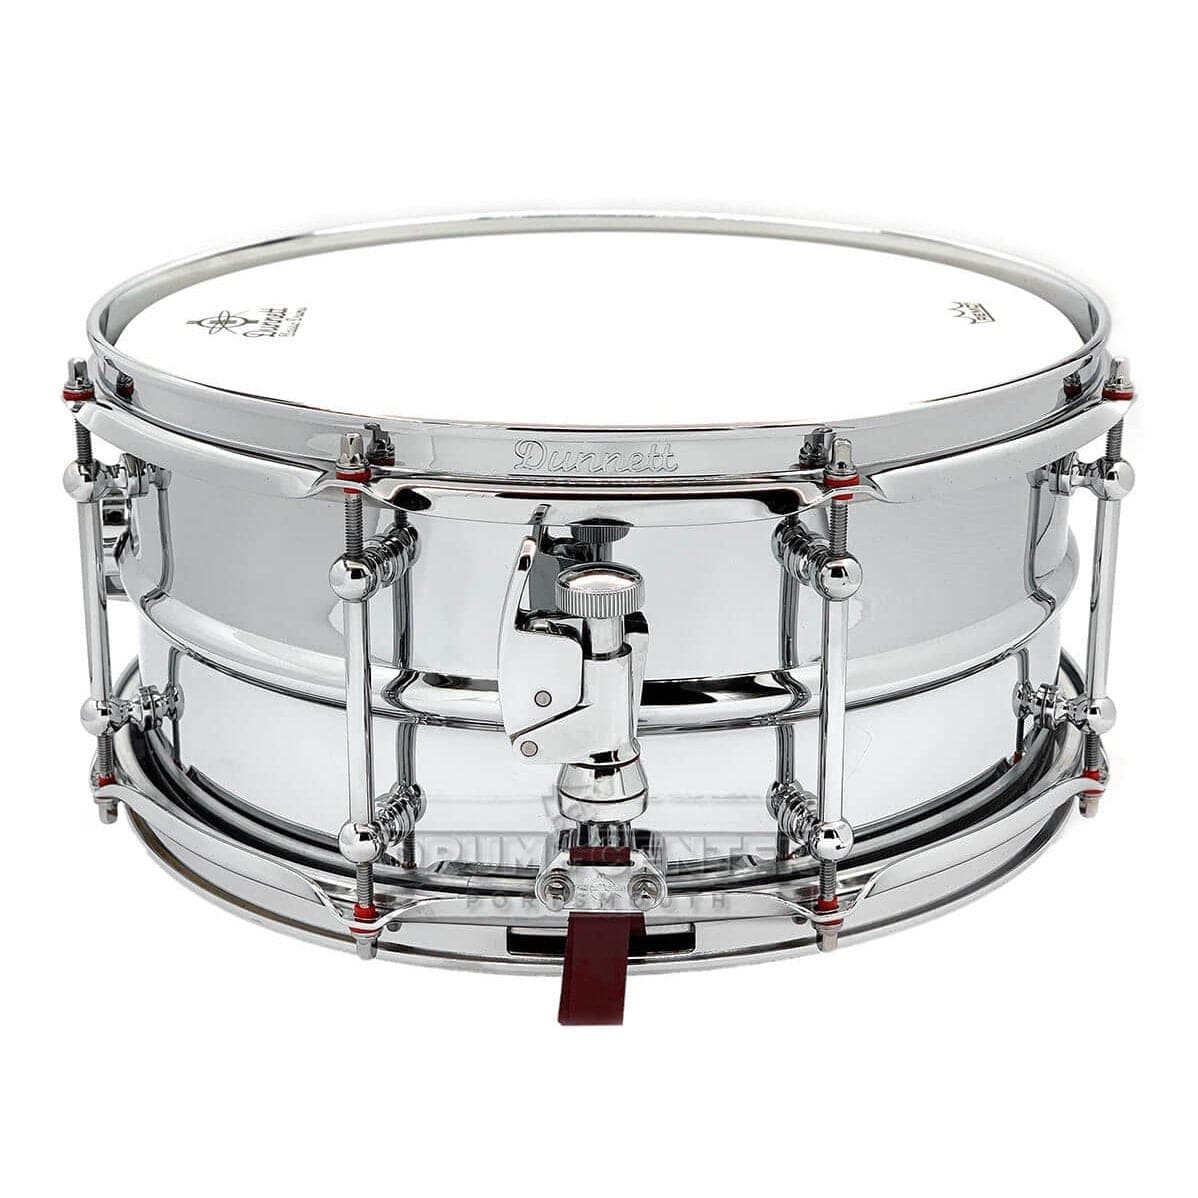 Dunnett Classic 2N Chrome Over Brass Snare Drum 14x6.5